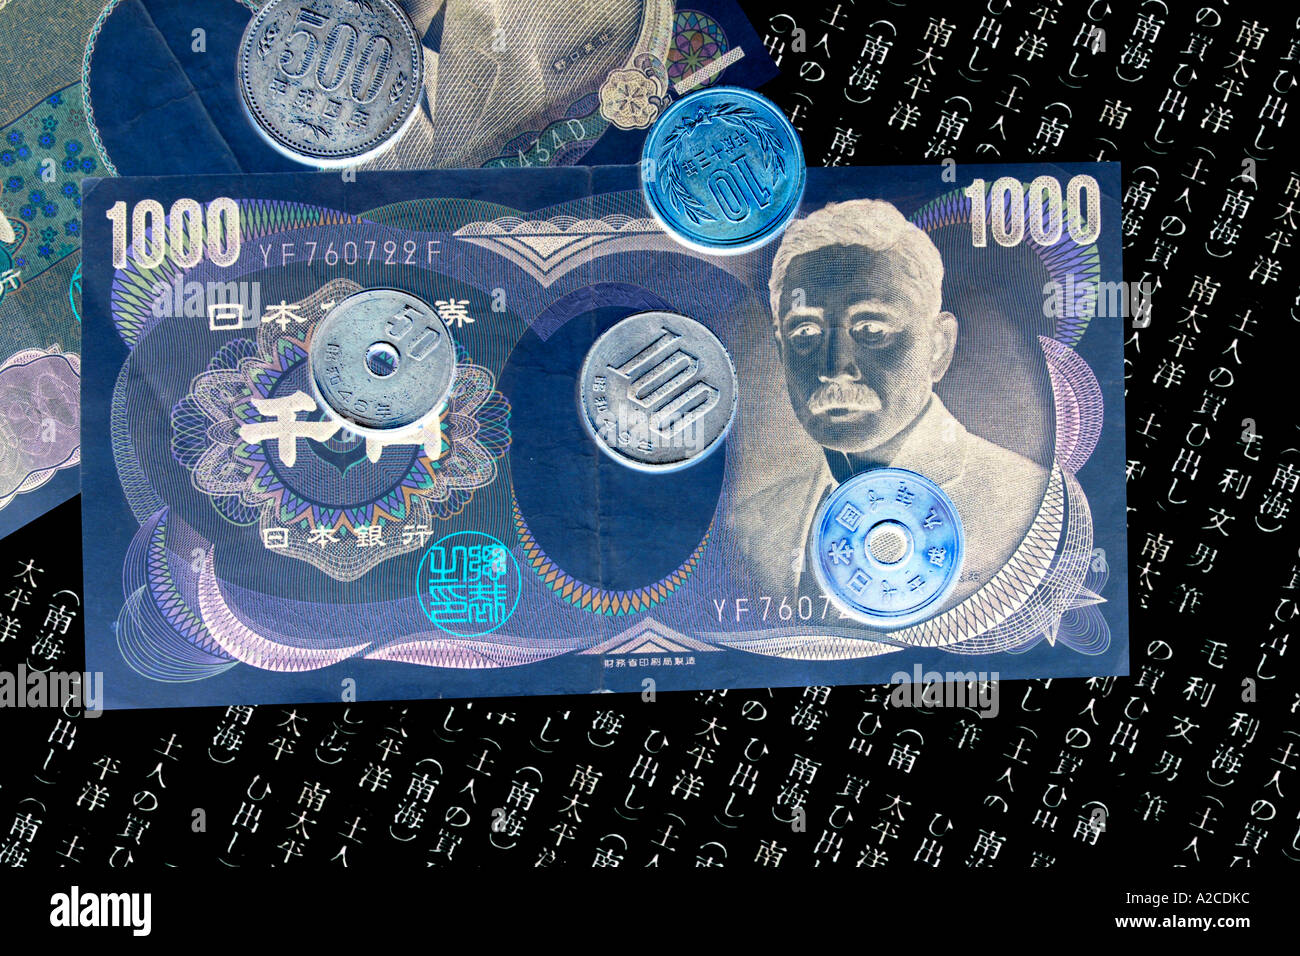 Ein Konzept-Bild der japanischen 1000 Yen-Banknoten und-Münzen gegen eine umgekehrte Hintergrund geschrieben. Stockfoto